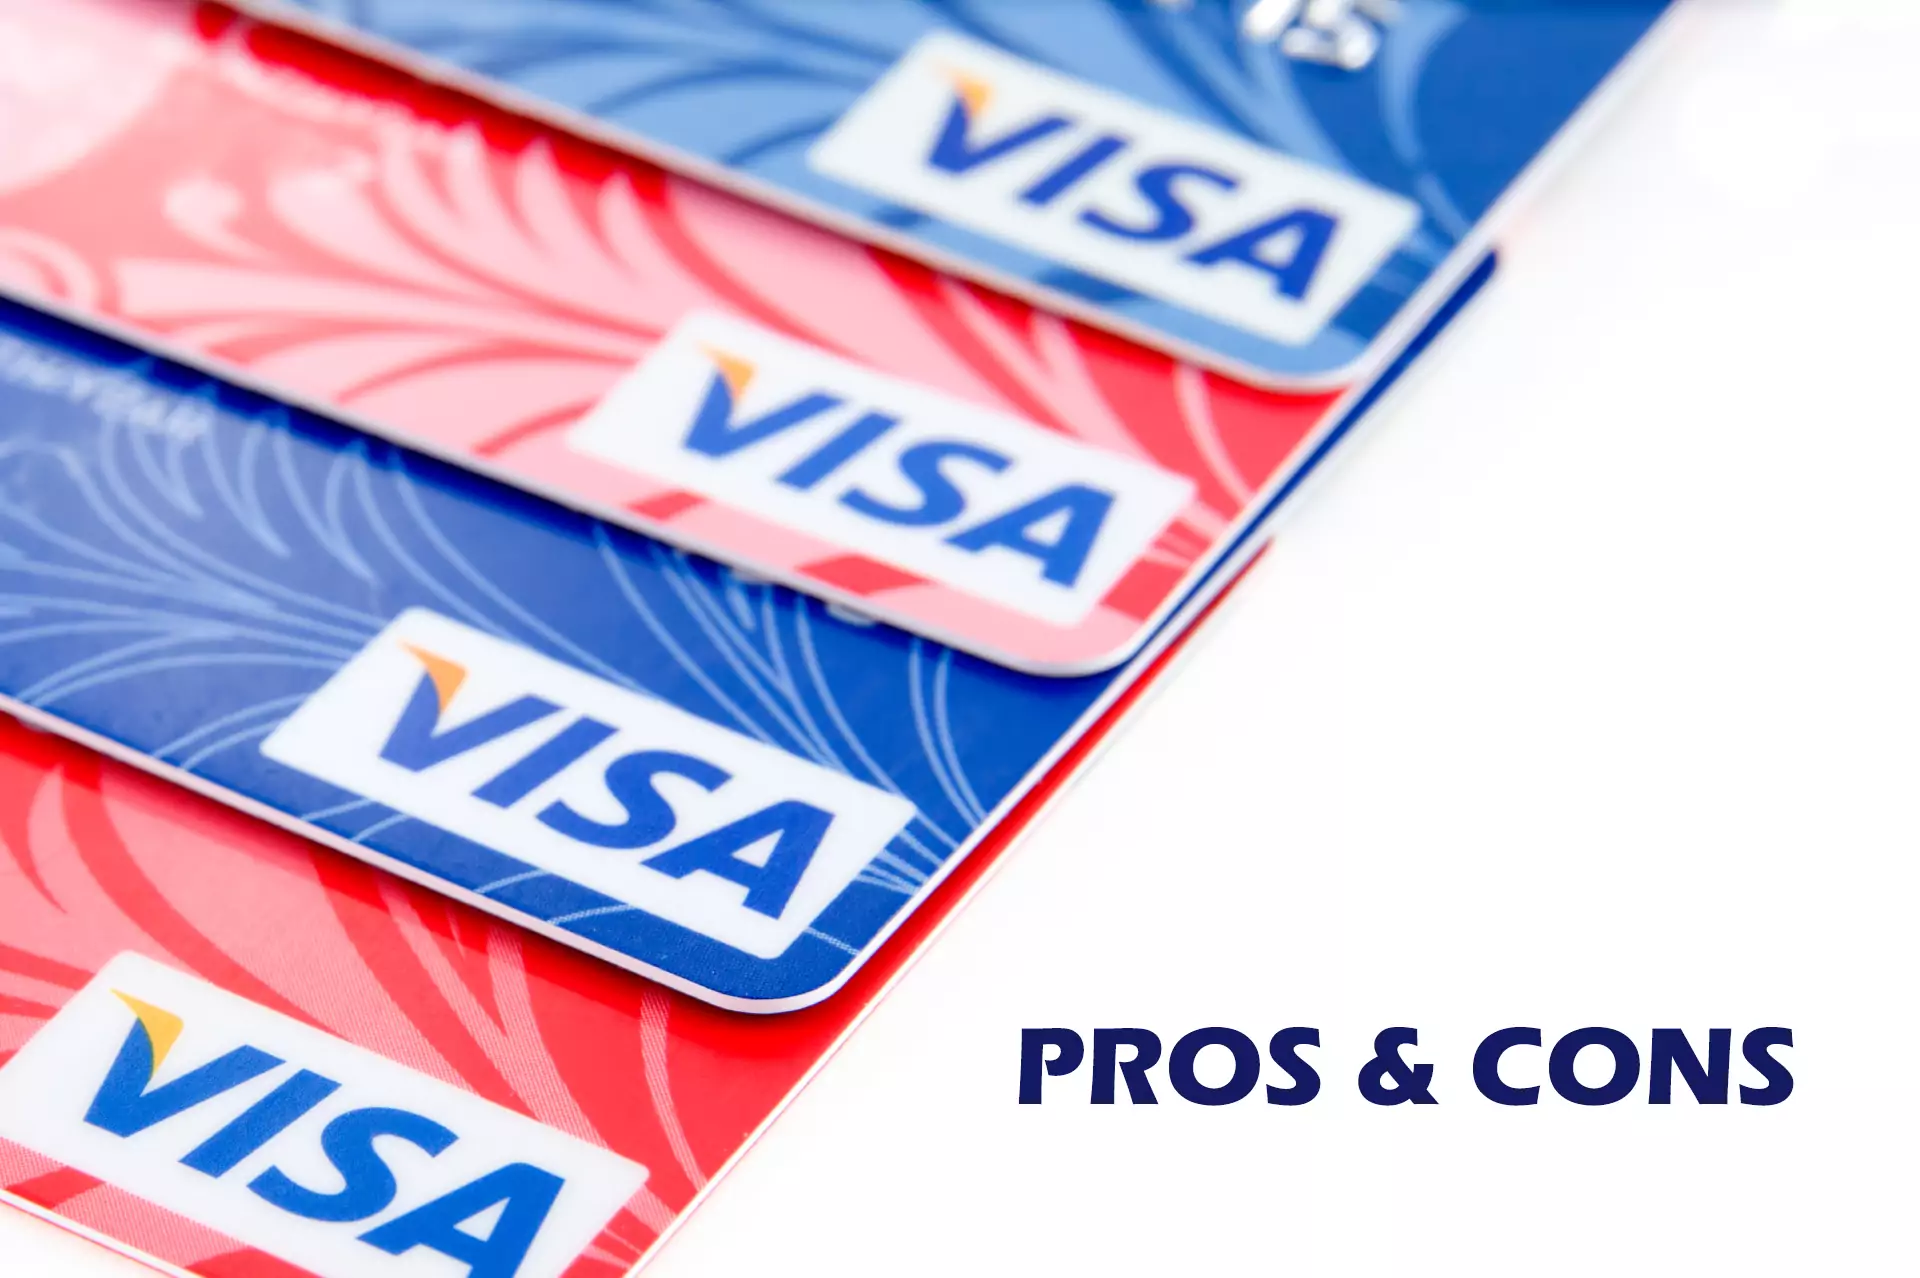 अपने बैंक में Visa कार्ड खोलने से पहले पेशेवरों और विपक्षों के बारे में हमारे सारांश पर ध्यान दें।